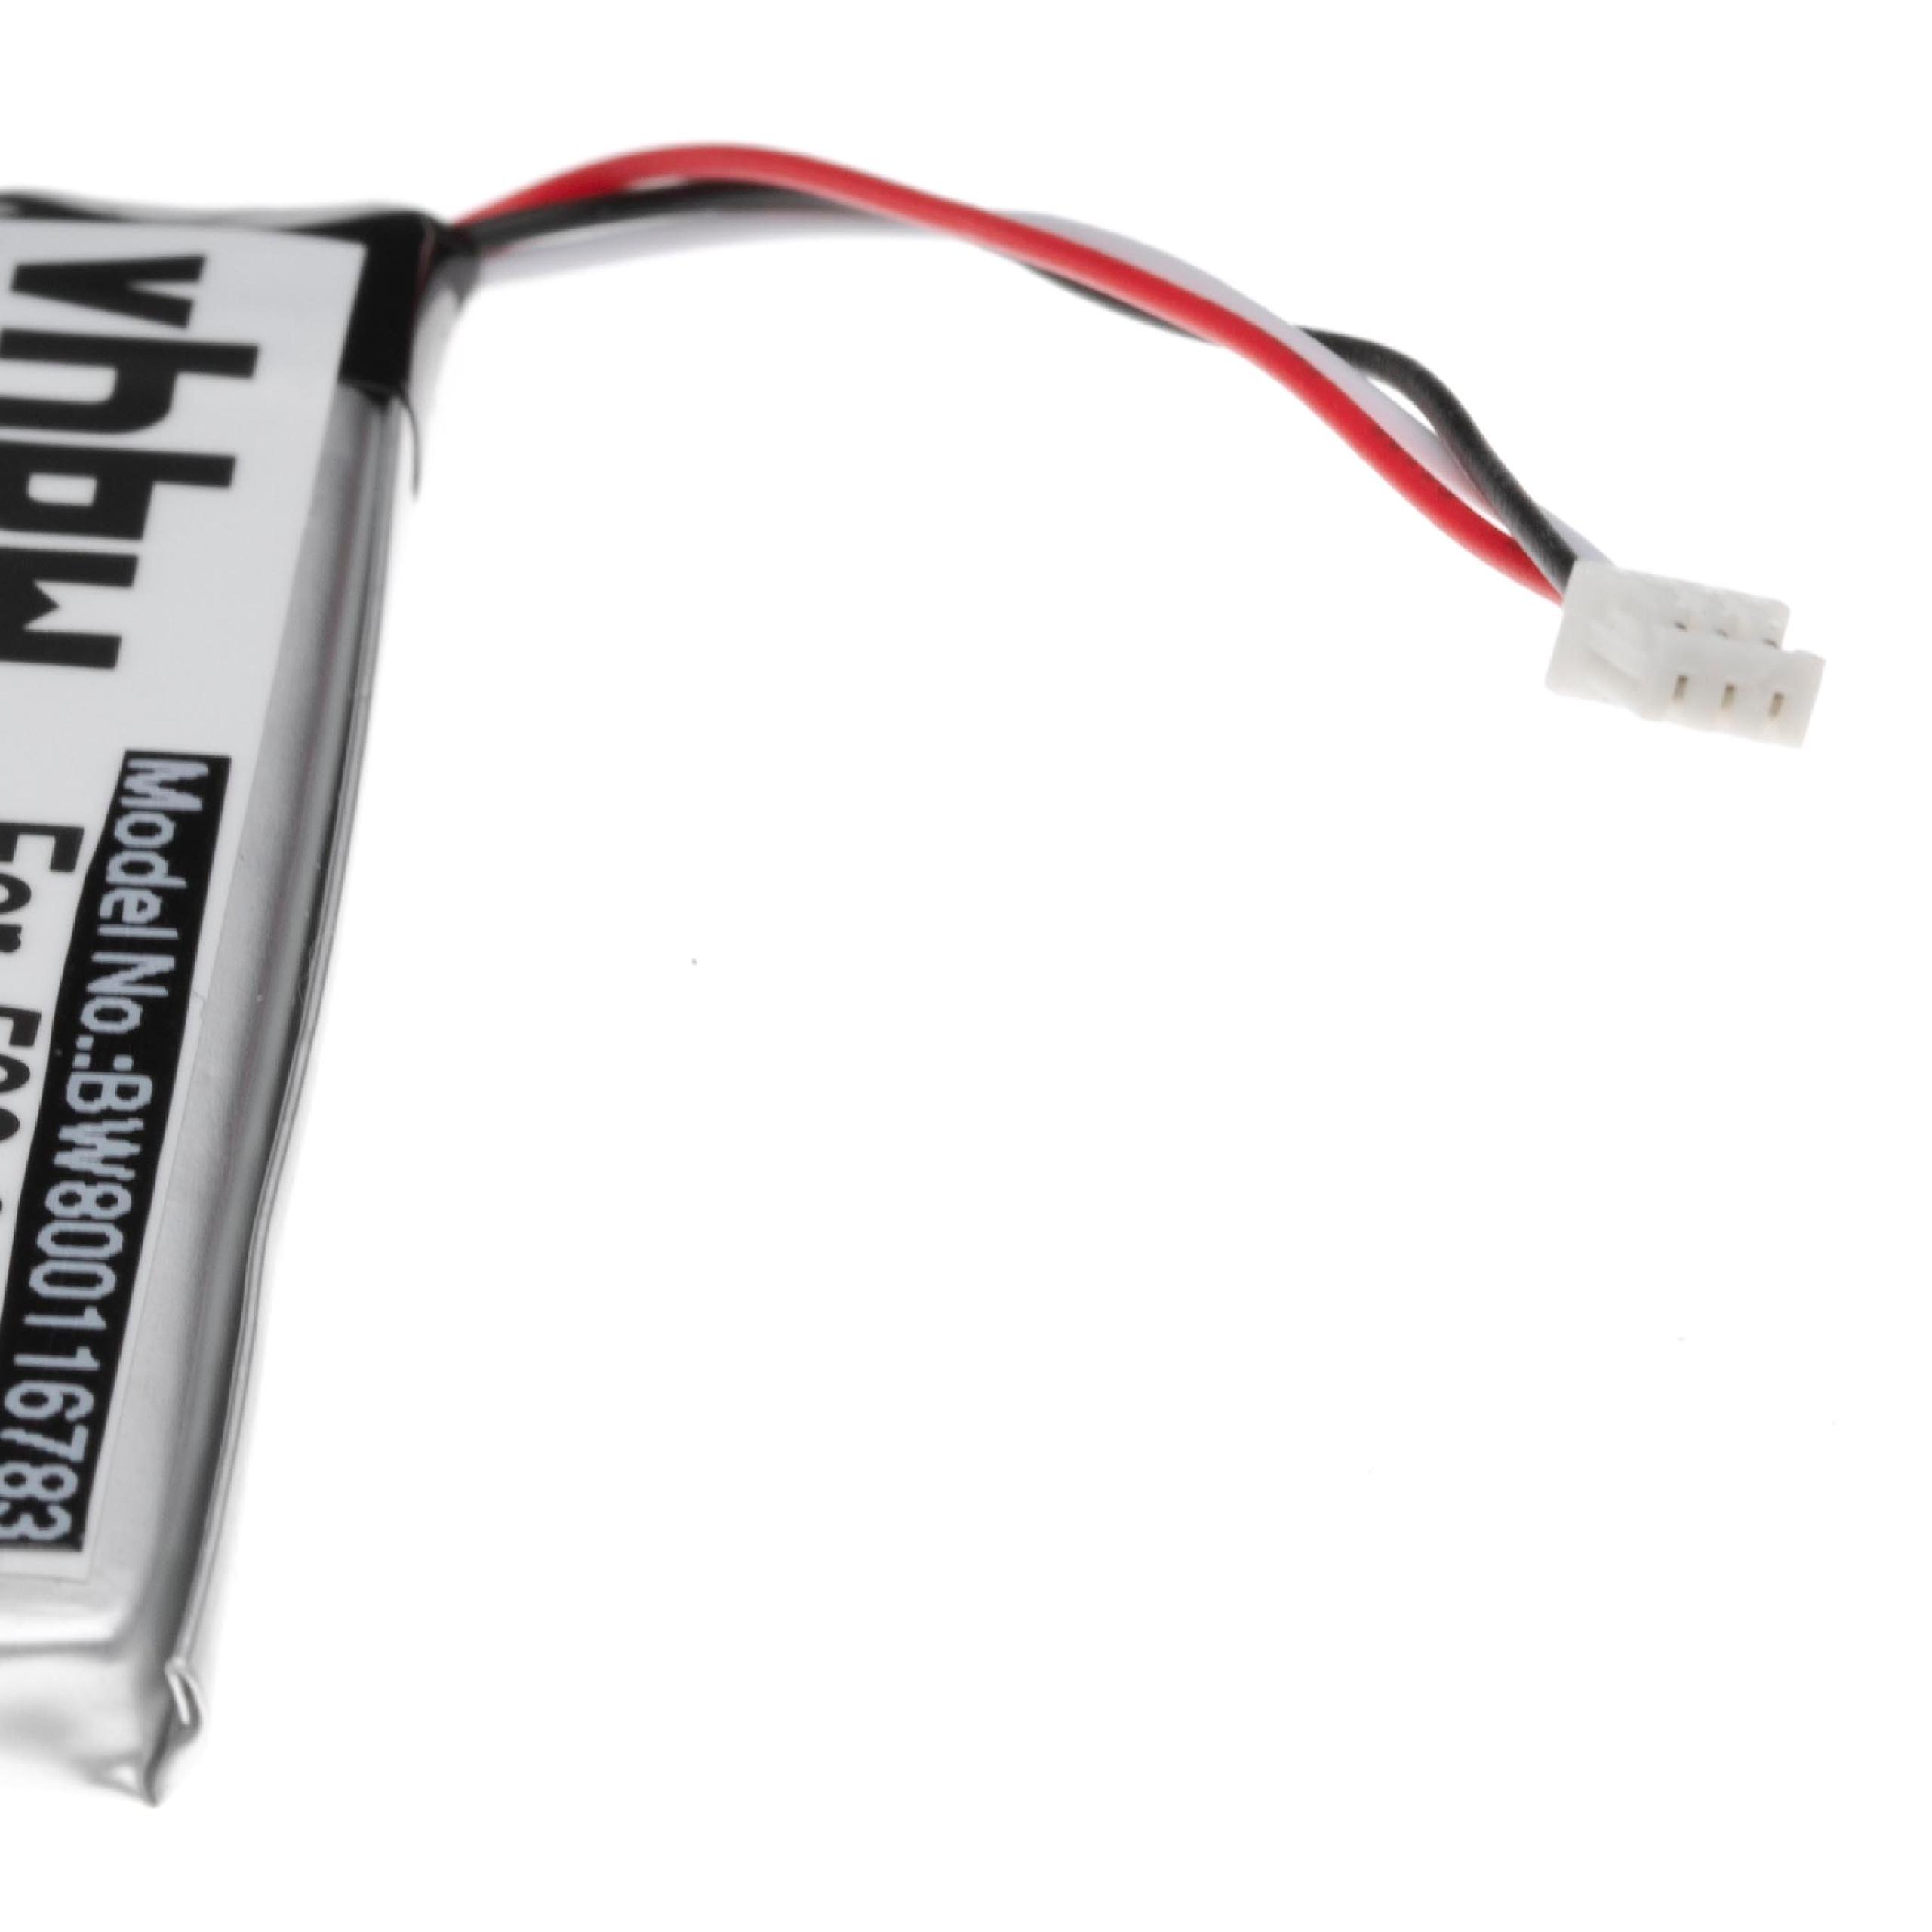 Batterie remplace Logitech 533-000132 pour casque audio - 1200mAh 3,7V Li-polymère